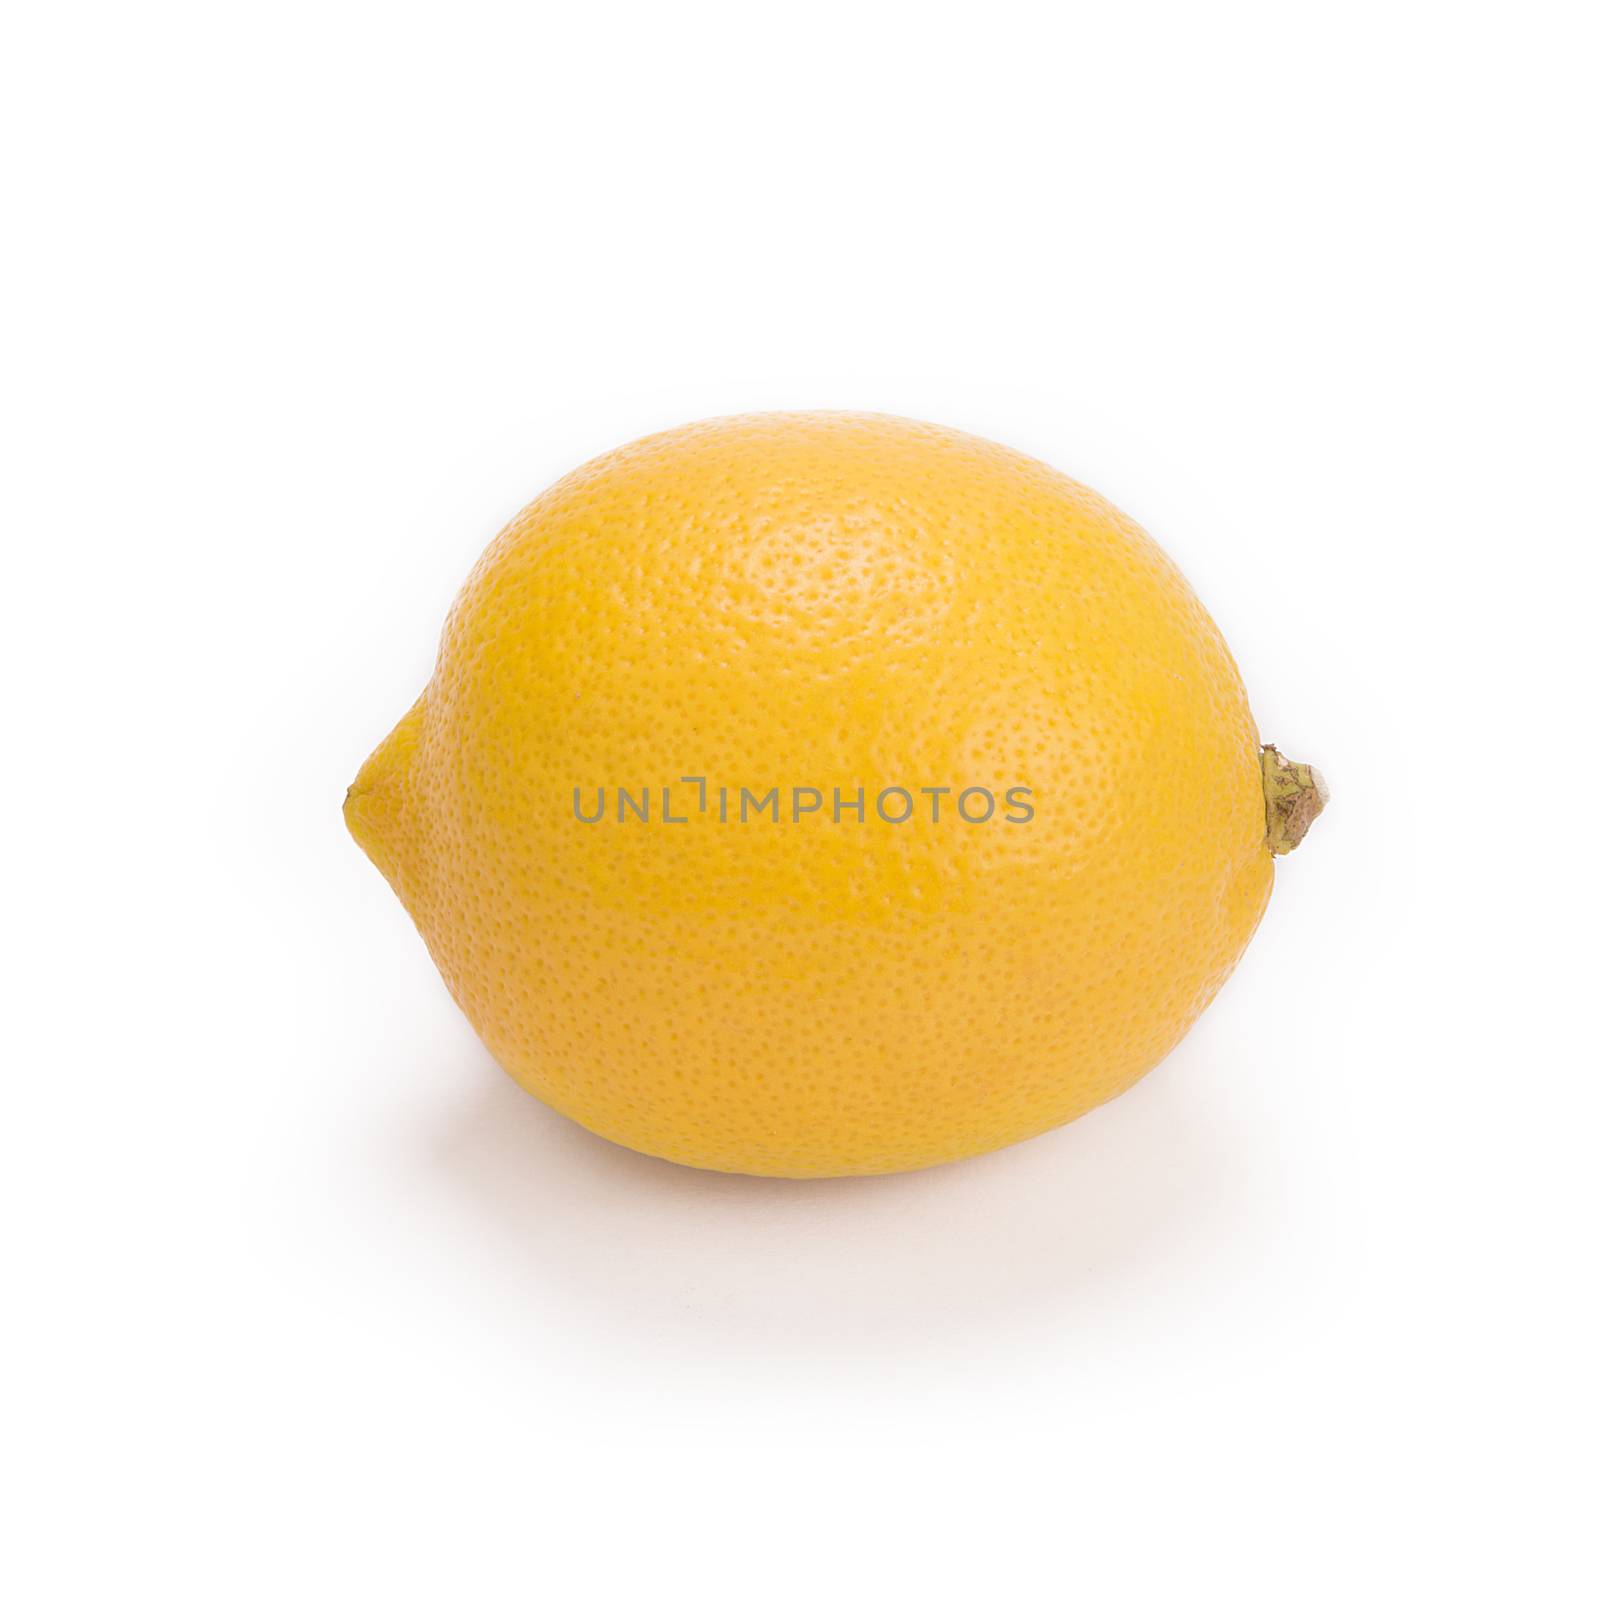 whole lemon isolated on white background, yellow lemon